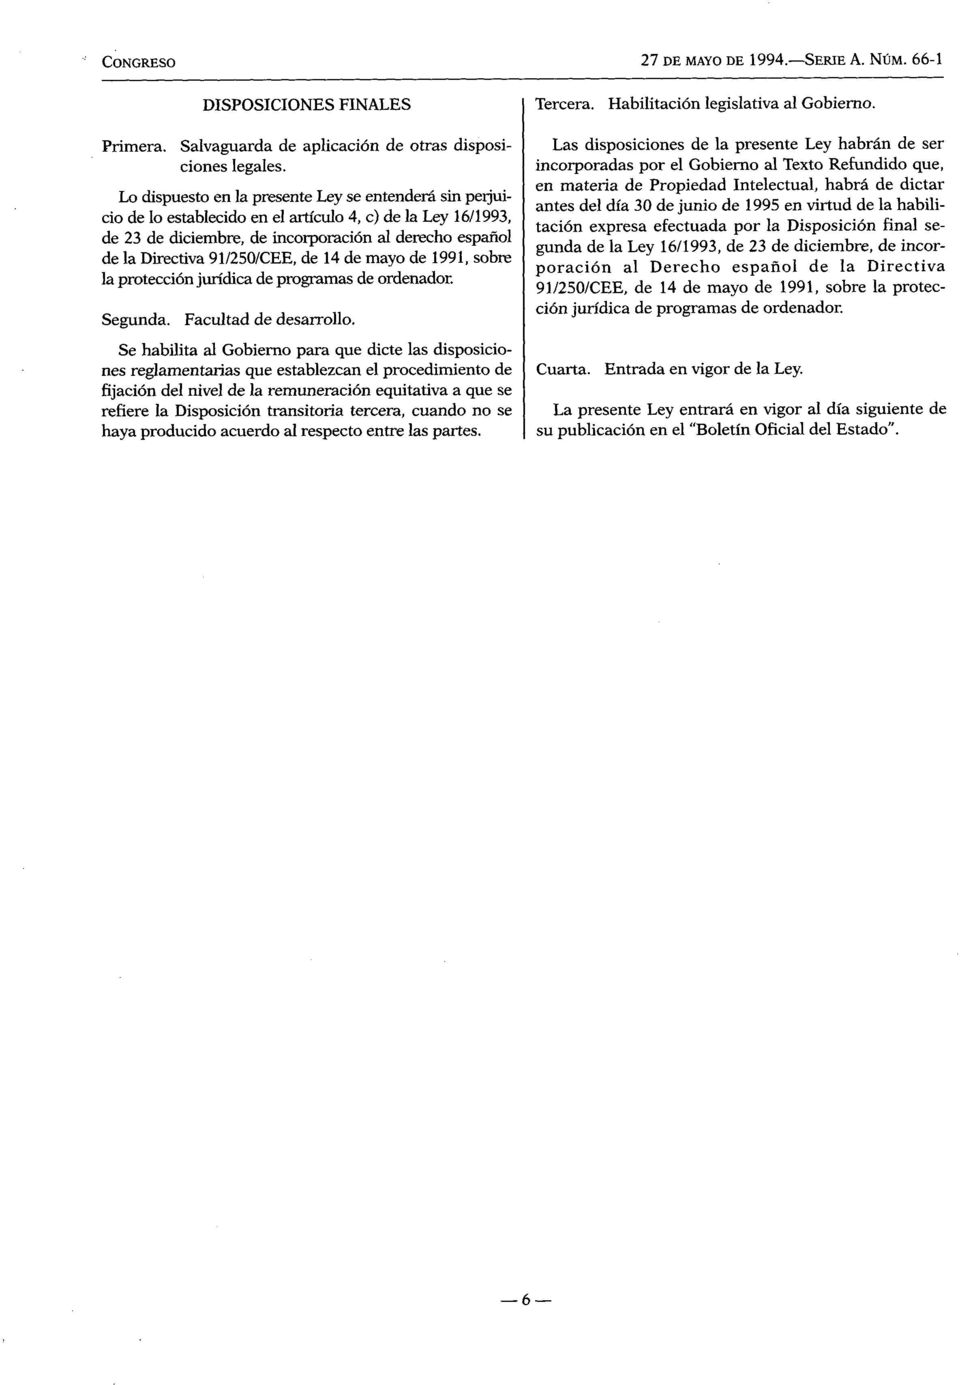 91/250/CEE, de 14 de mayo de 1991, sobre la protección jurídica de programas de ordenador. Segunda. Facultad de desarrollo.